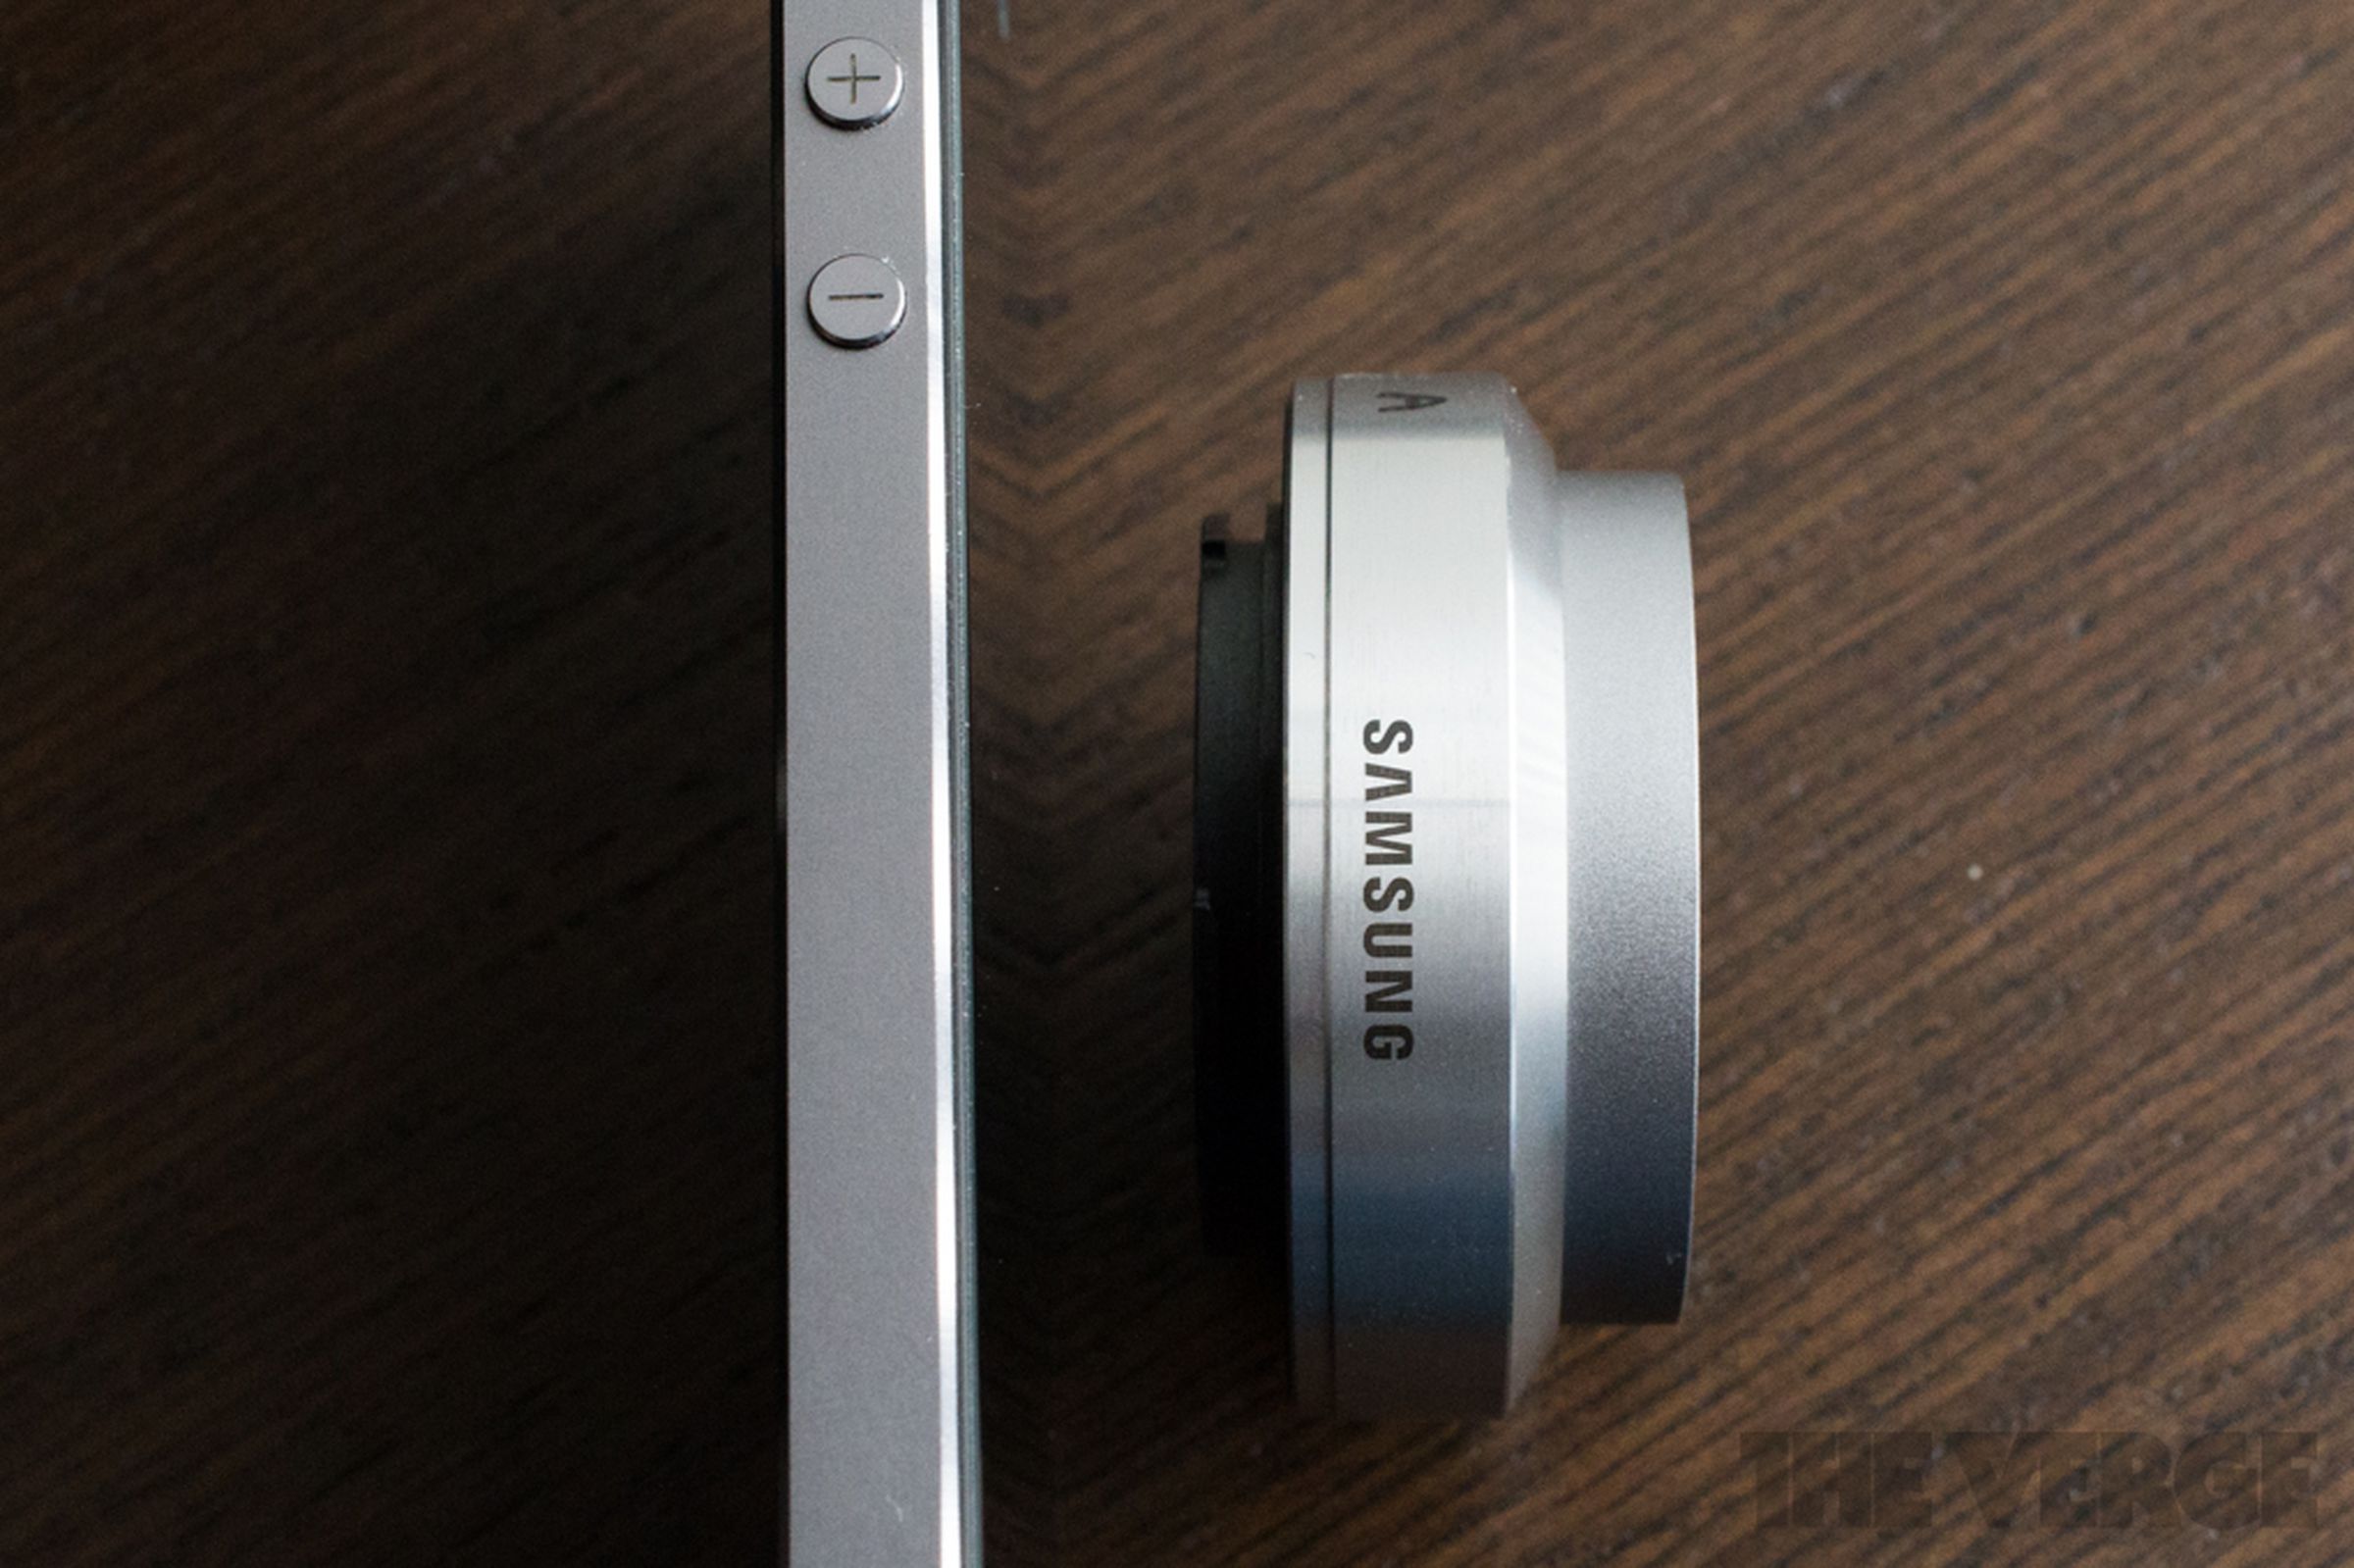 Samsung NX Mini hands-on photos